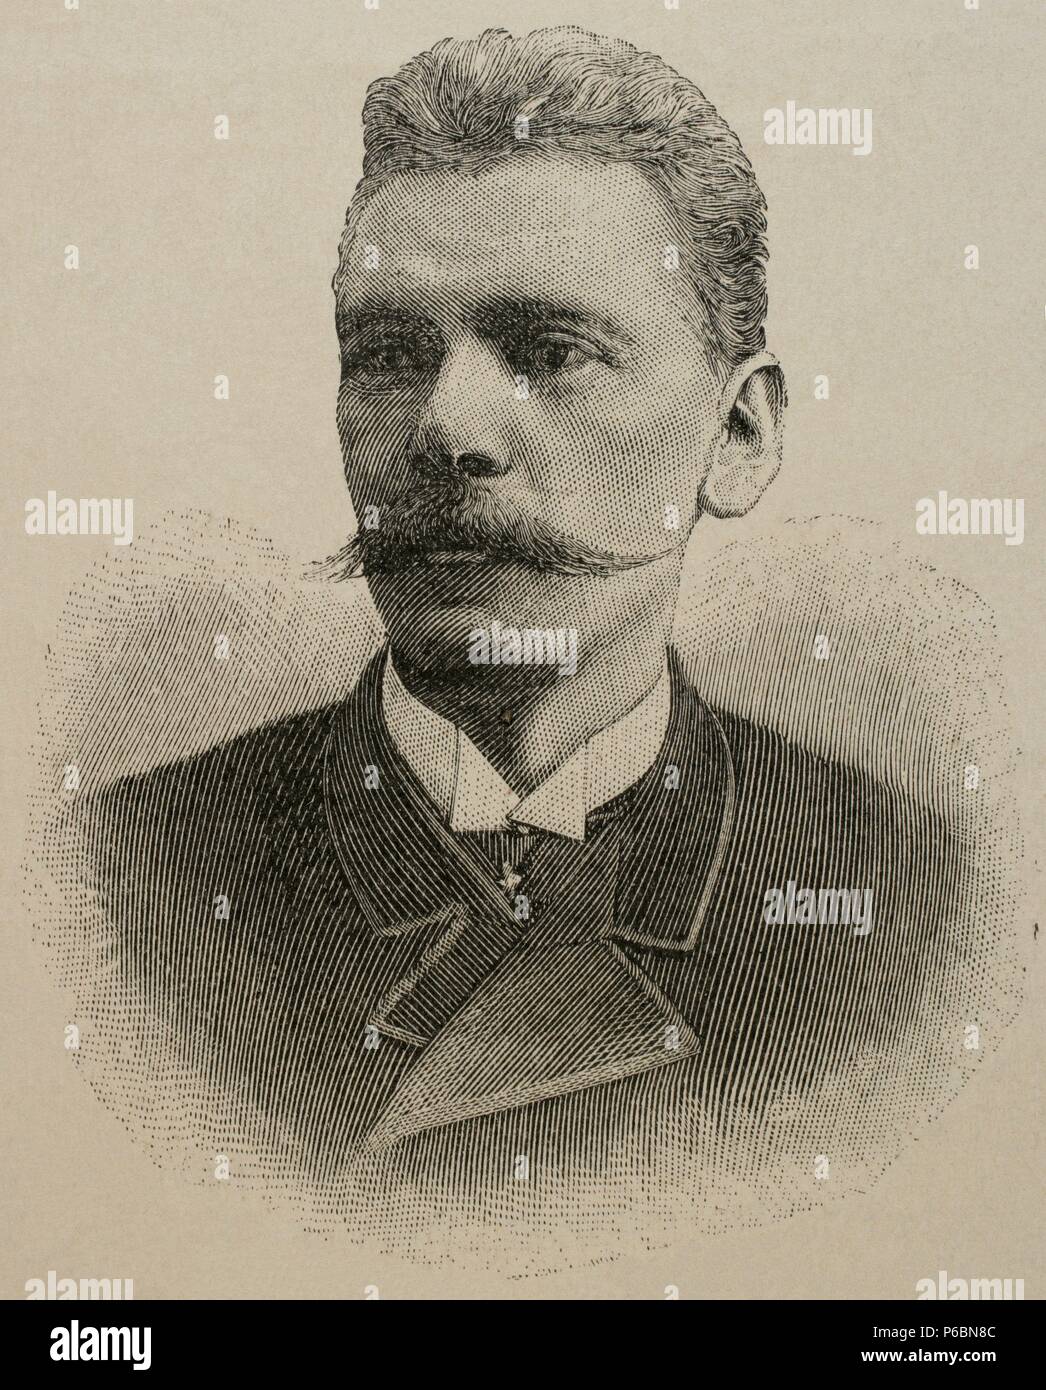 Karl Larsen (1860-1931). Escritor danés. Grabado del siglo XIX. Foto de stock